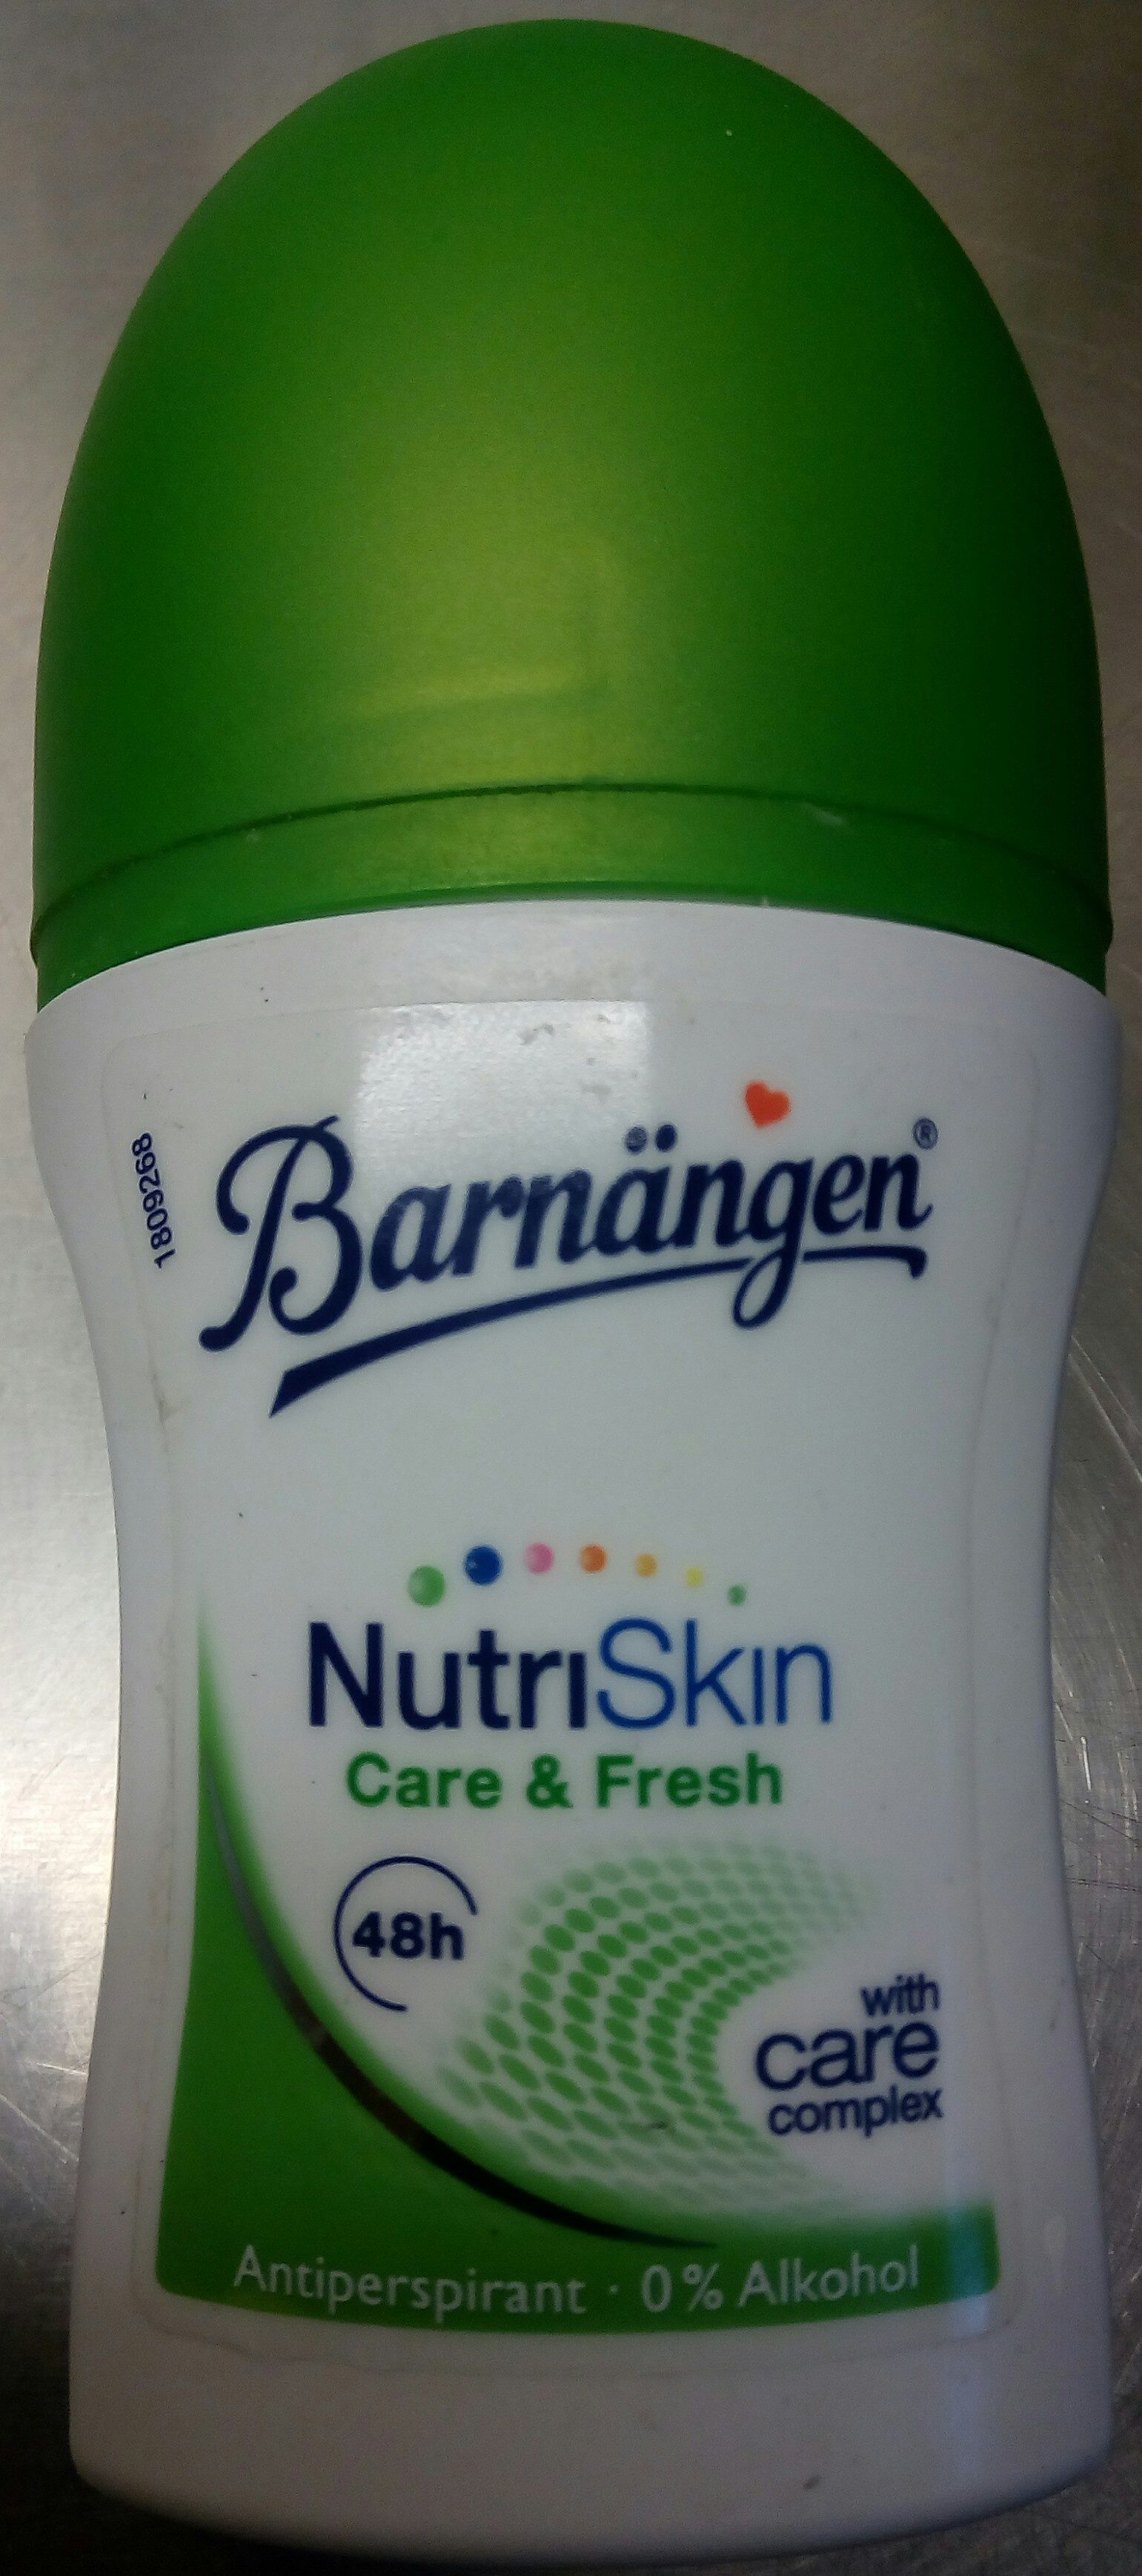 Barnängen NutriSkin Care & Fresh - Product - en